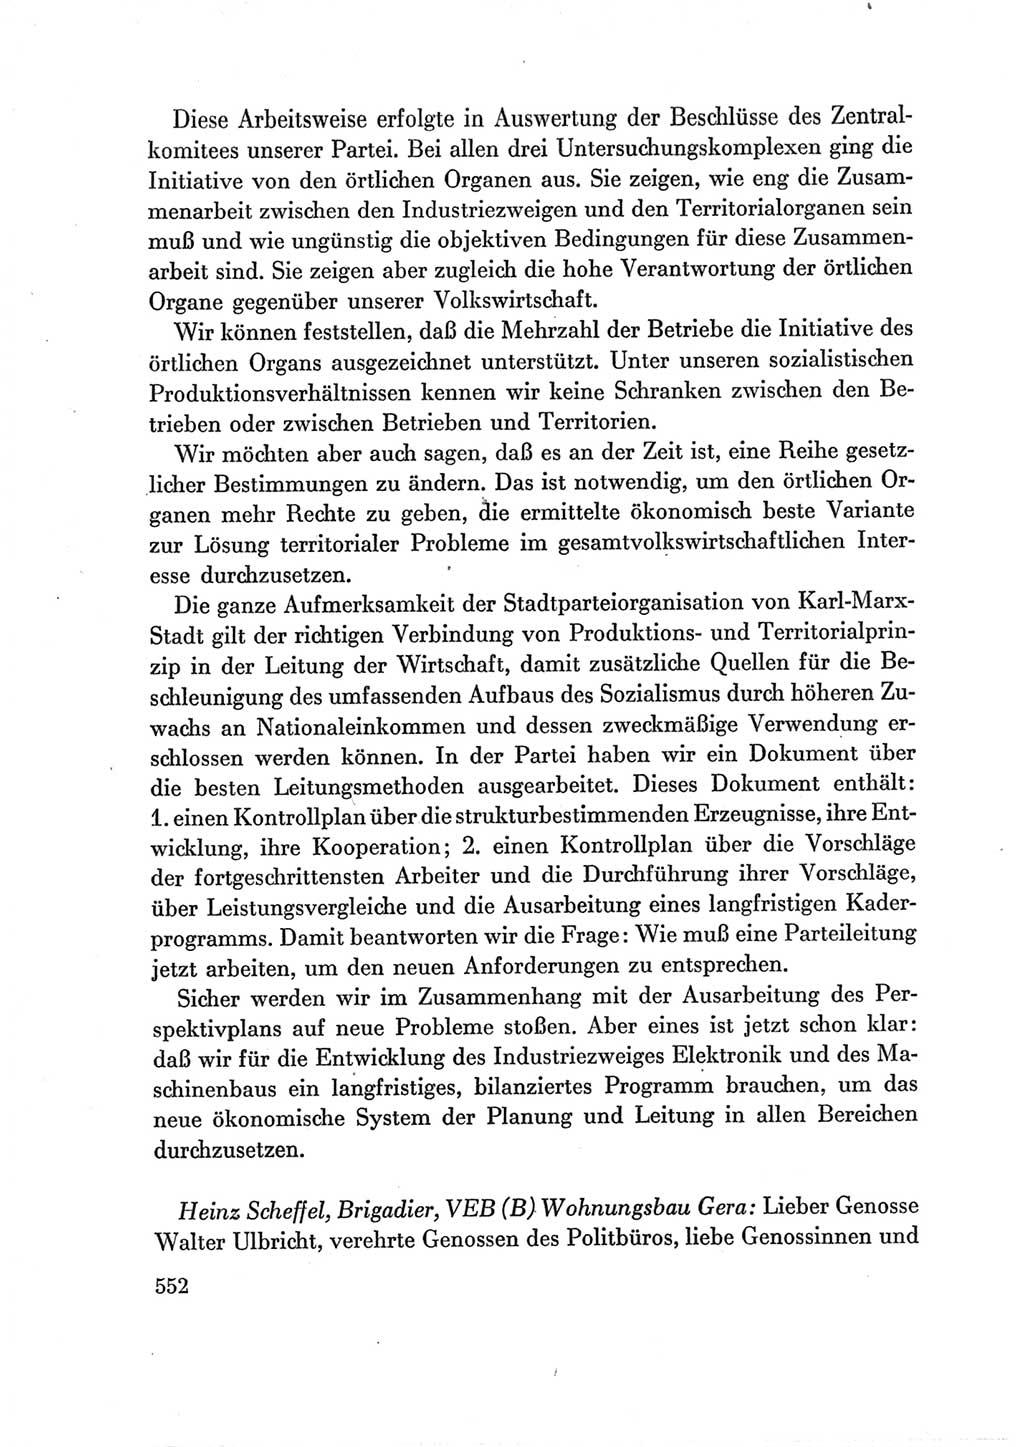 Protokoll der Verhandlungen des Ⅶ. Parteitages der Sozialistischen Einheitspartei Deutschlands (SED) [Deutsche Demokratische Republik (DDR)] 1967, Band Ⅲ, Seite 552 (Prot. Verh. Ⅶ. PT SED DDR 1967, Bd. Ⅲ, S. 552)